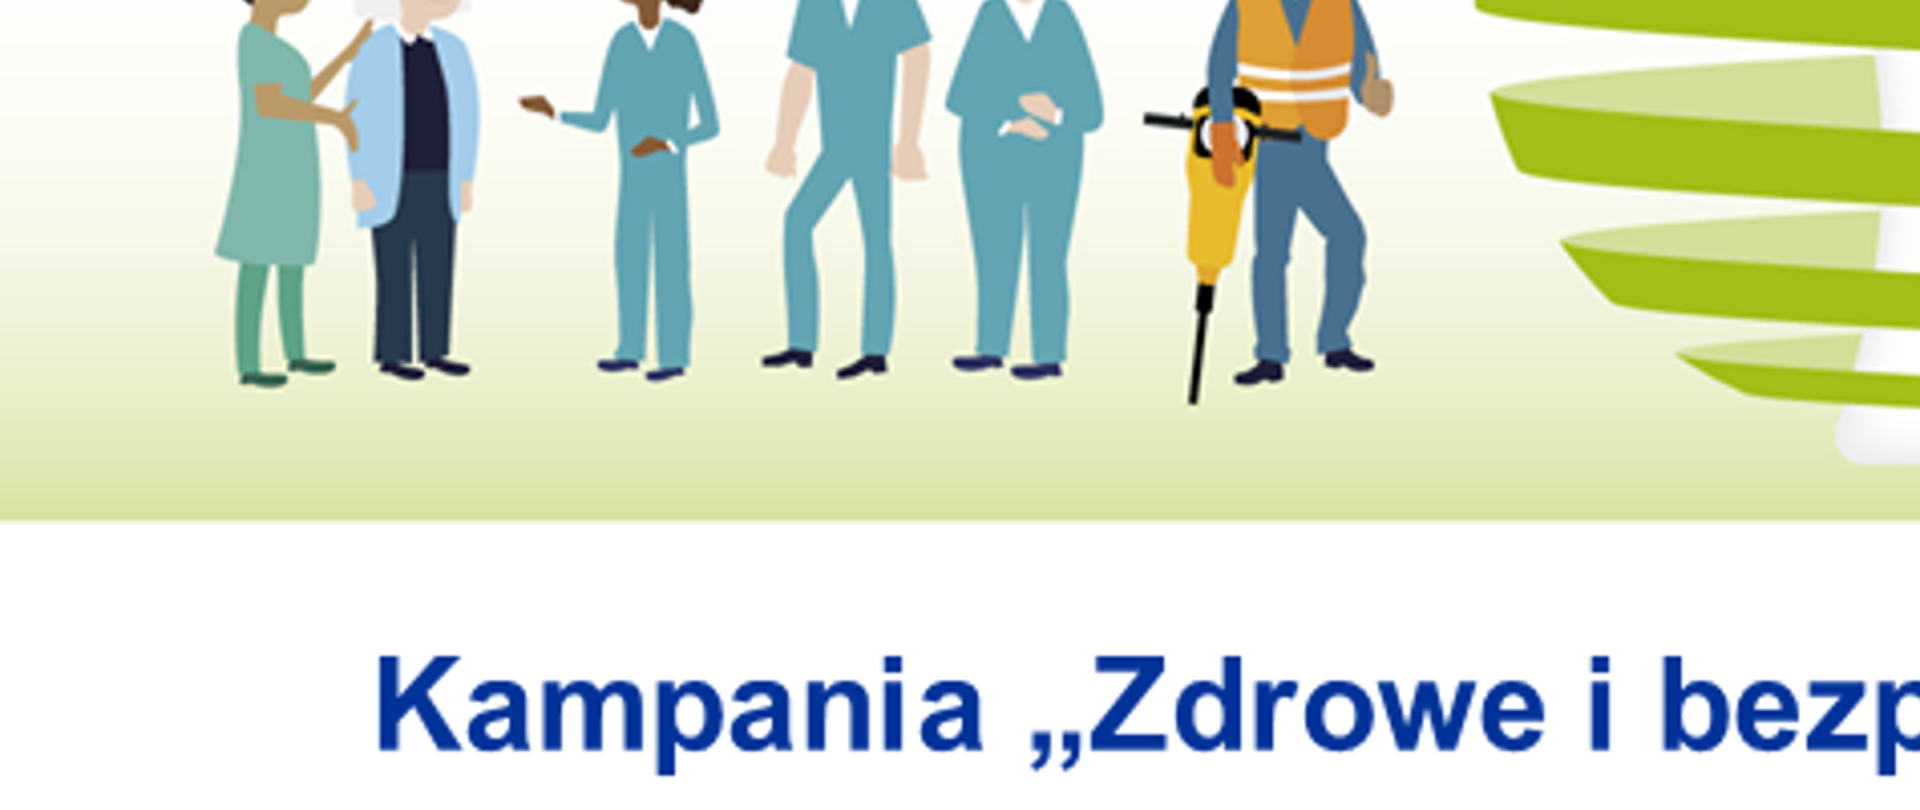 Grafika promująca kampanię "Zdrowe i bezpieczne miejsce pracy" na lata 2020-2022